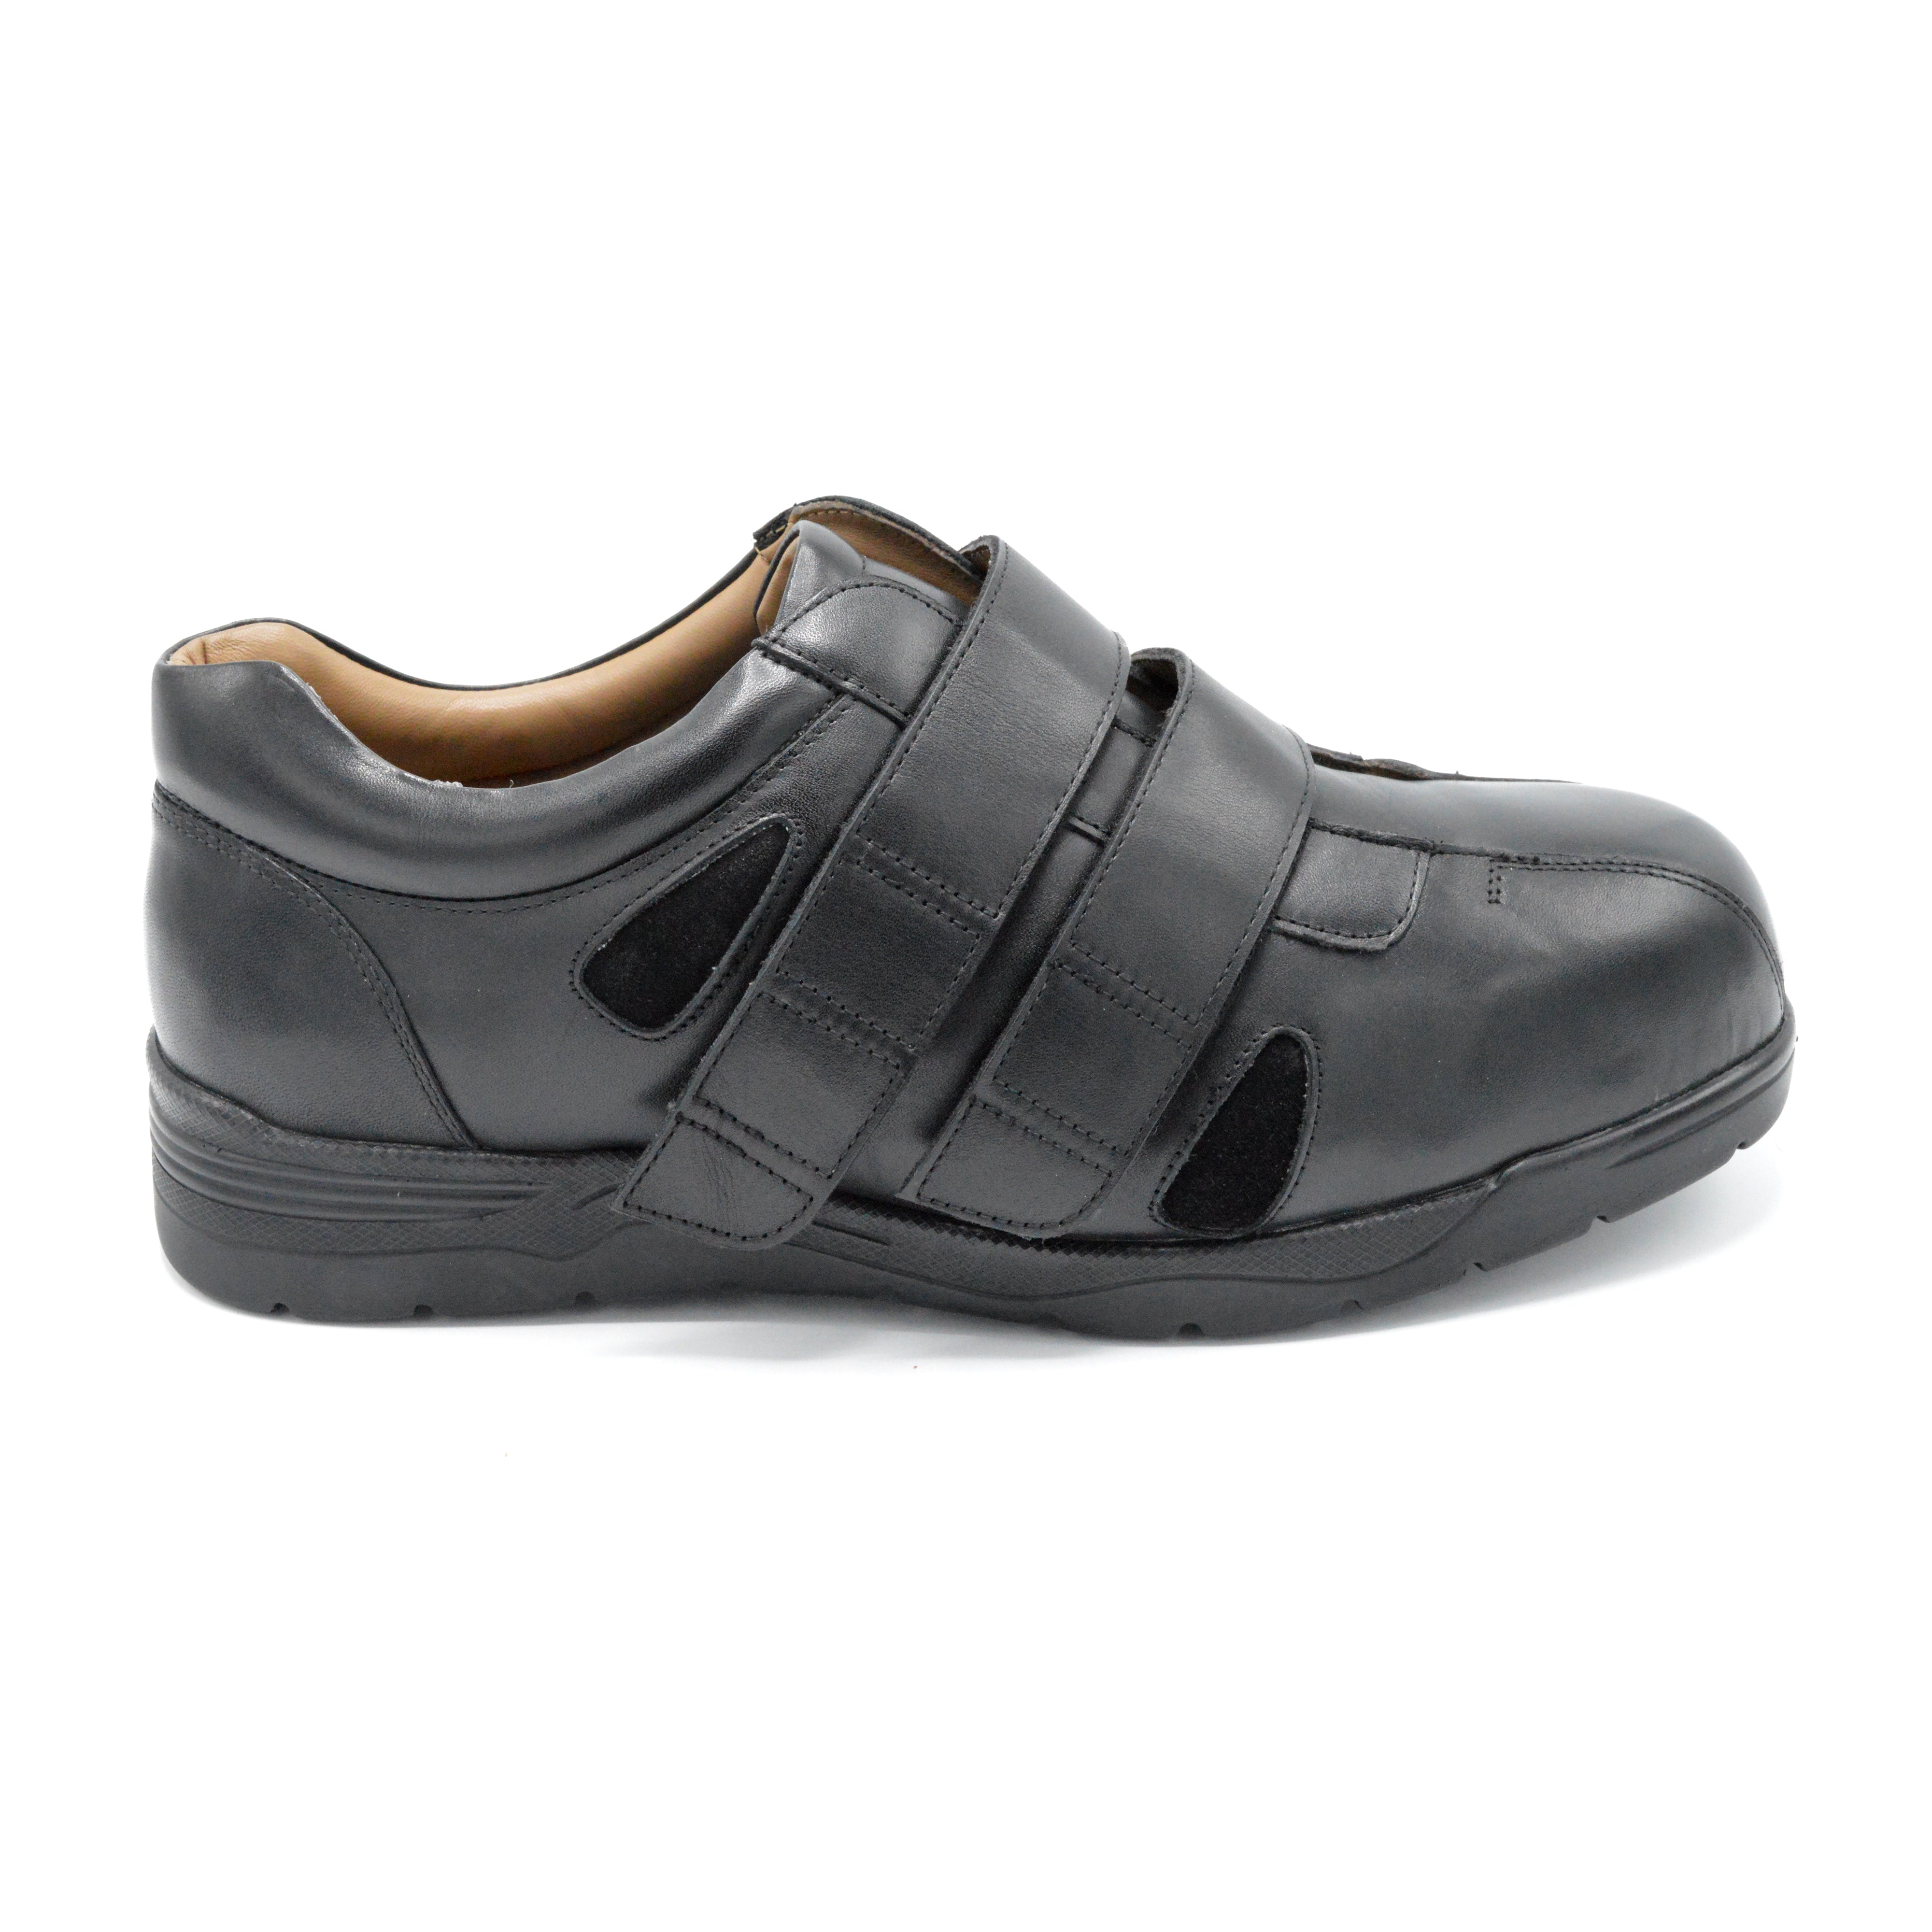 APEX Men's Strap Walking Shoe - Black